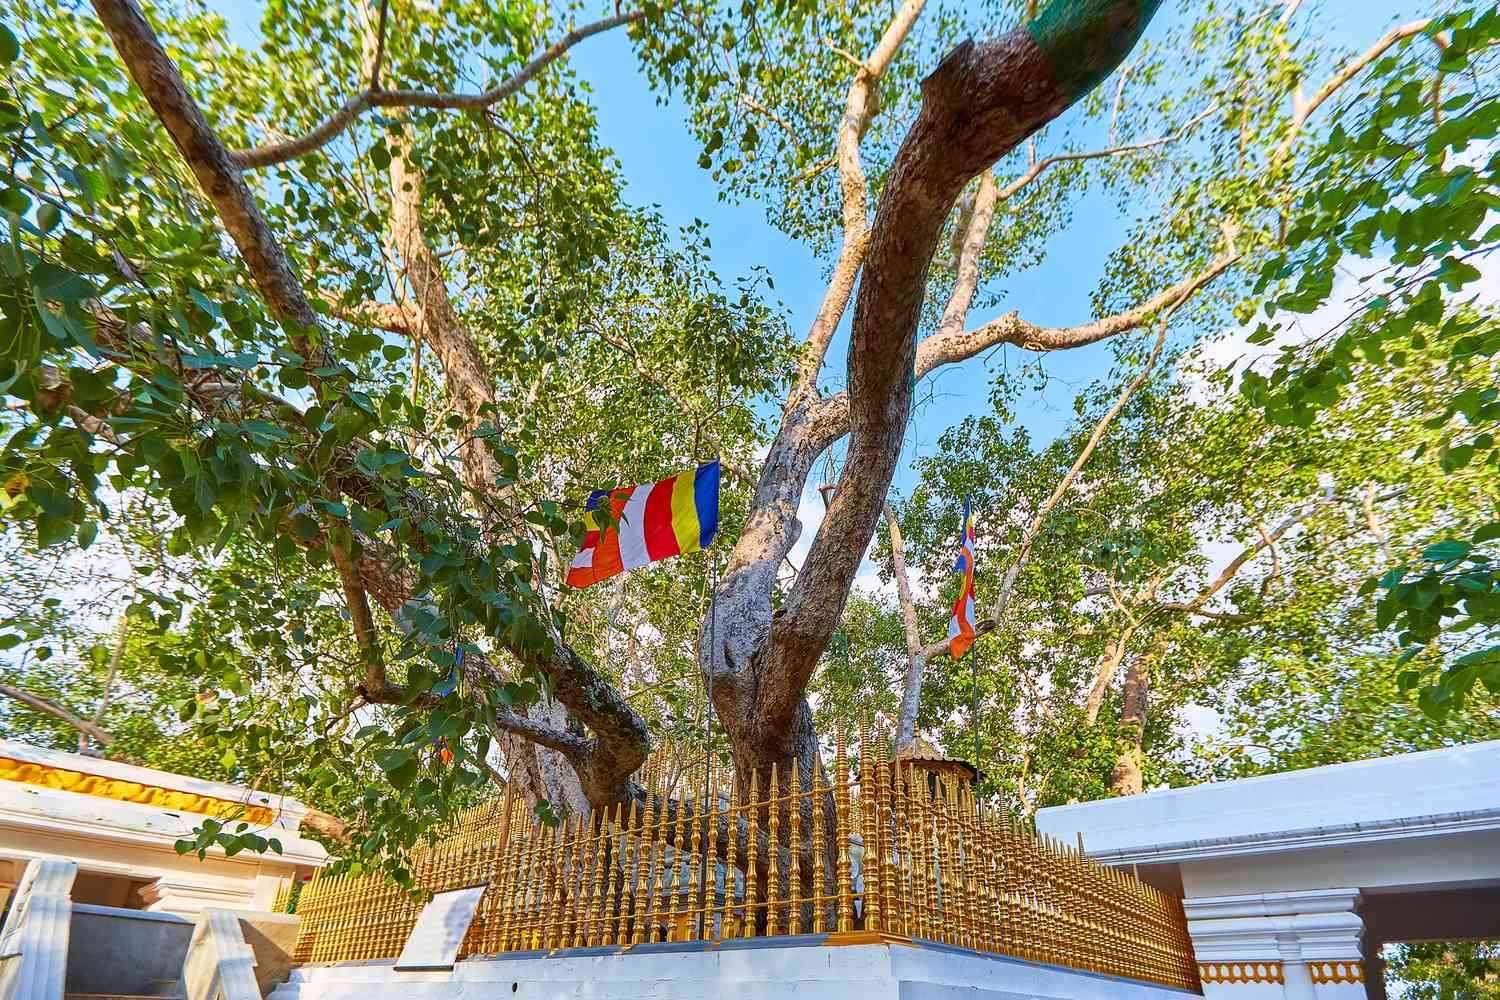 Jaya Sri Maha Bodhi es una higuera sagrada en los Jardines Mahamewna, Anuradhapura. Un lugar sagrado para los budistas de Sri Lanka